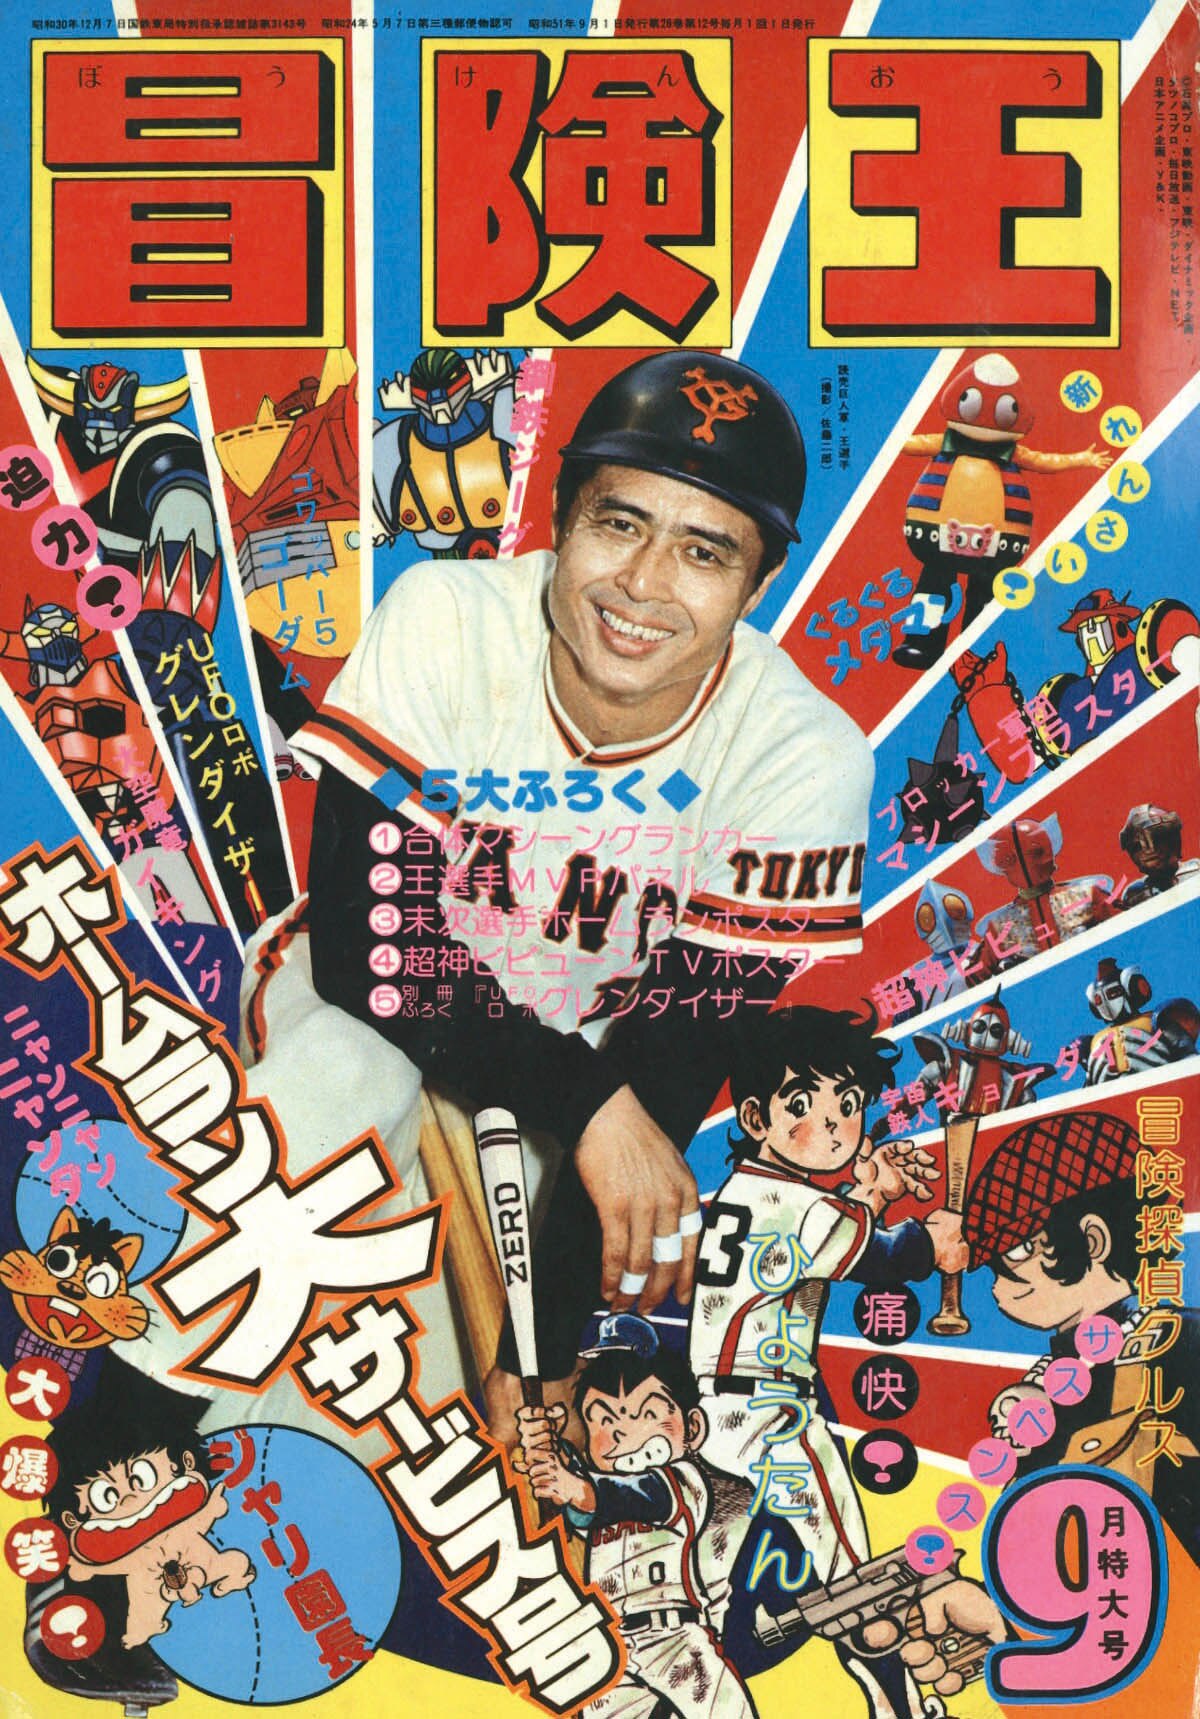 冒険王1976(S51)09.01